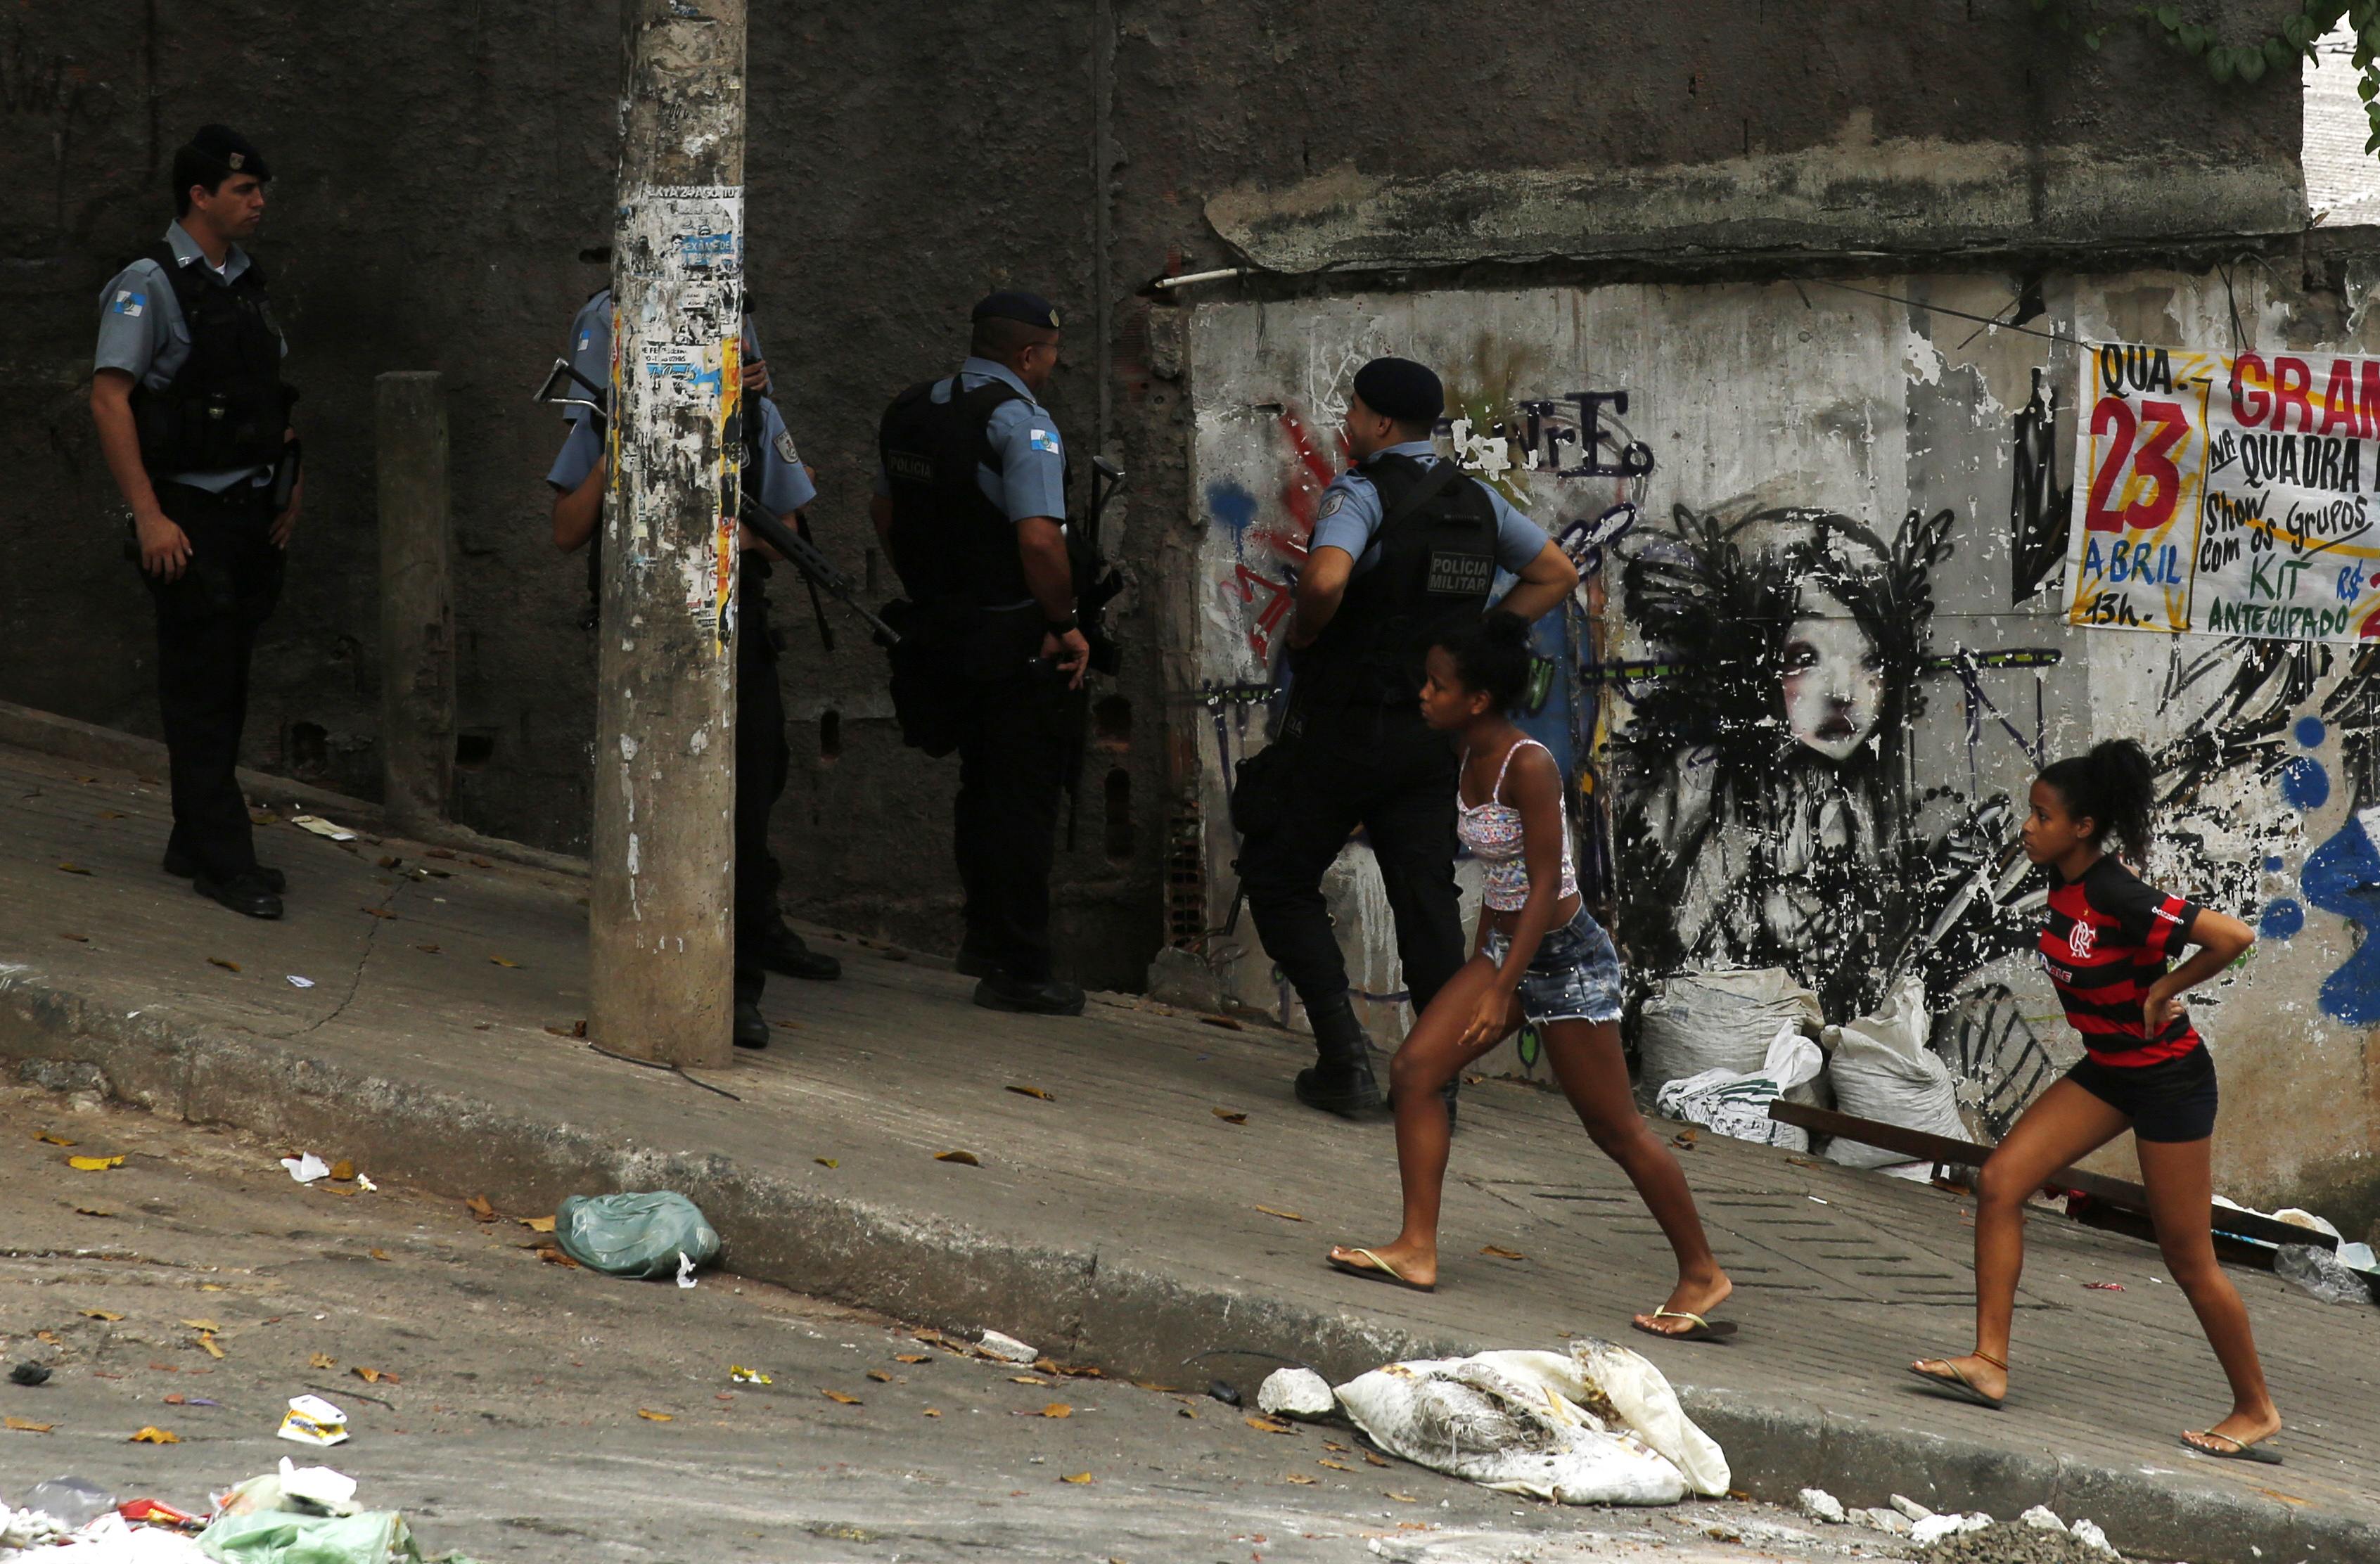 Βραζιλία: Ετοιμασίες για το Μουντιάλ με φόντο τις βίαιες συγκρούσεις